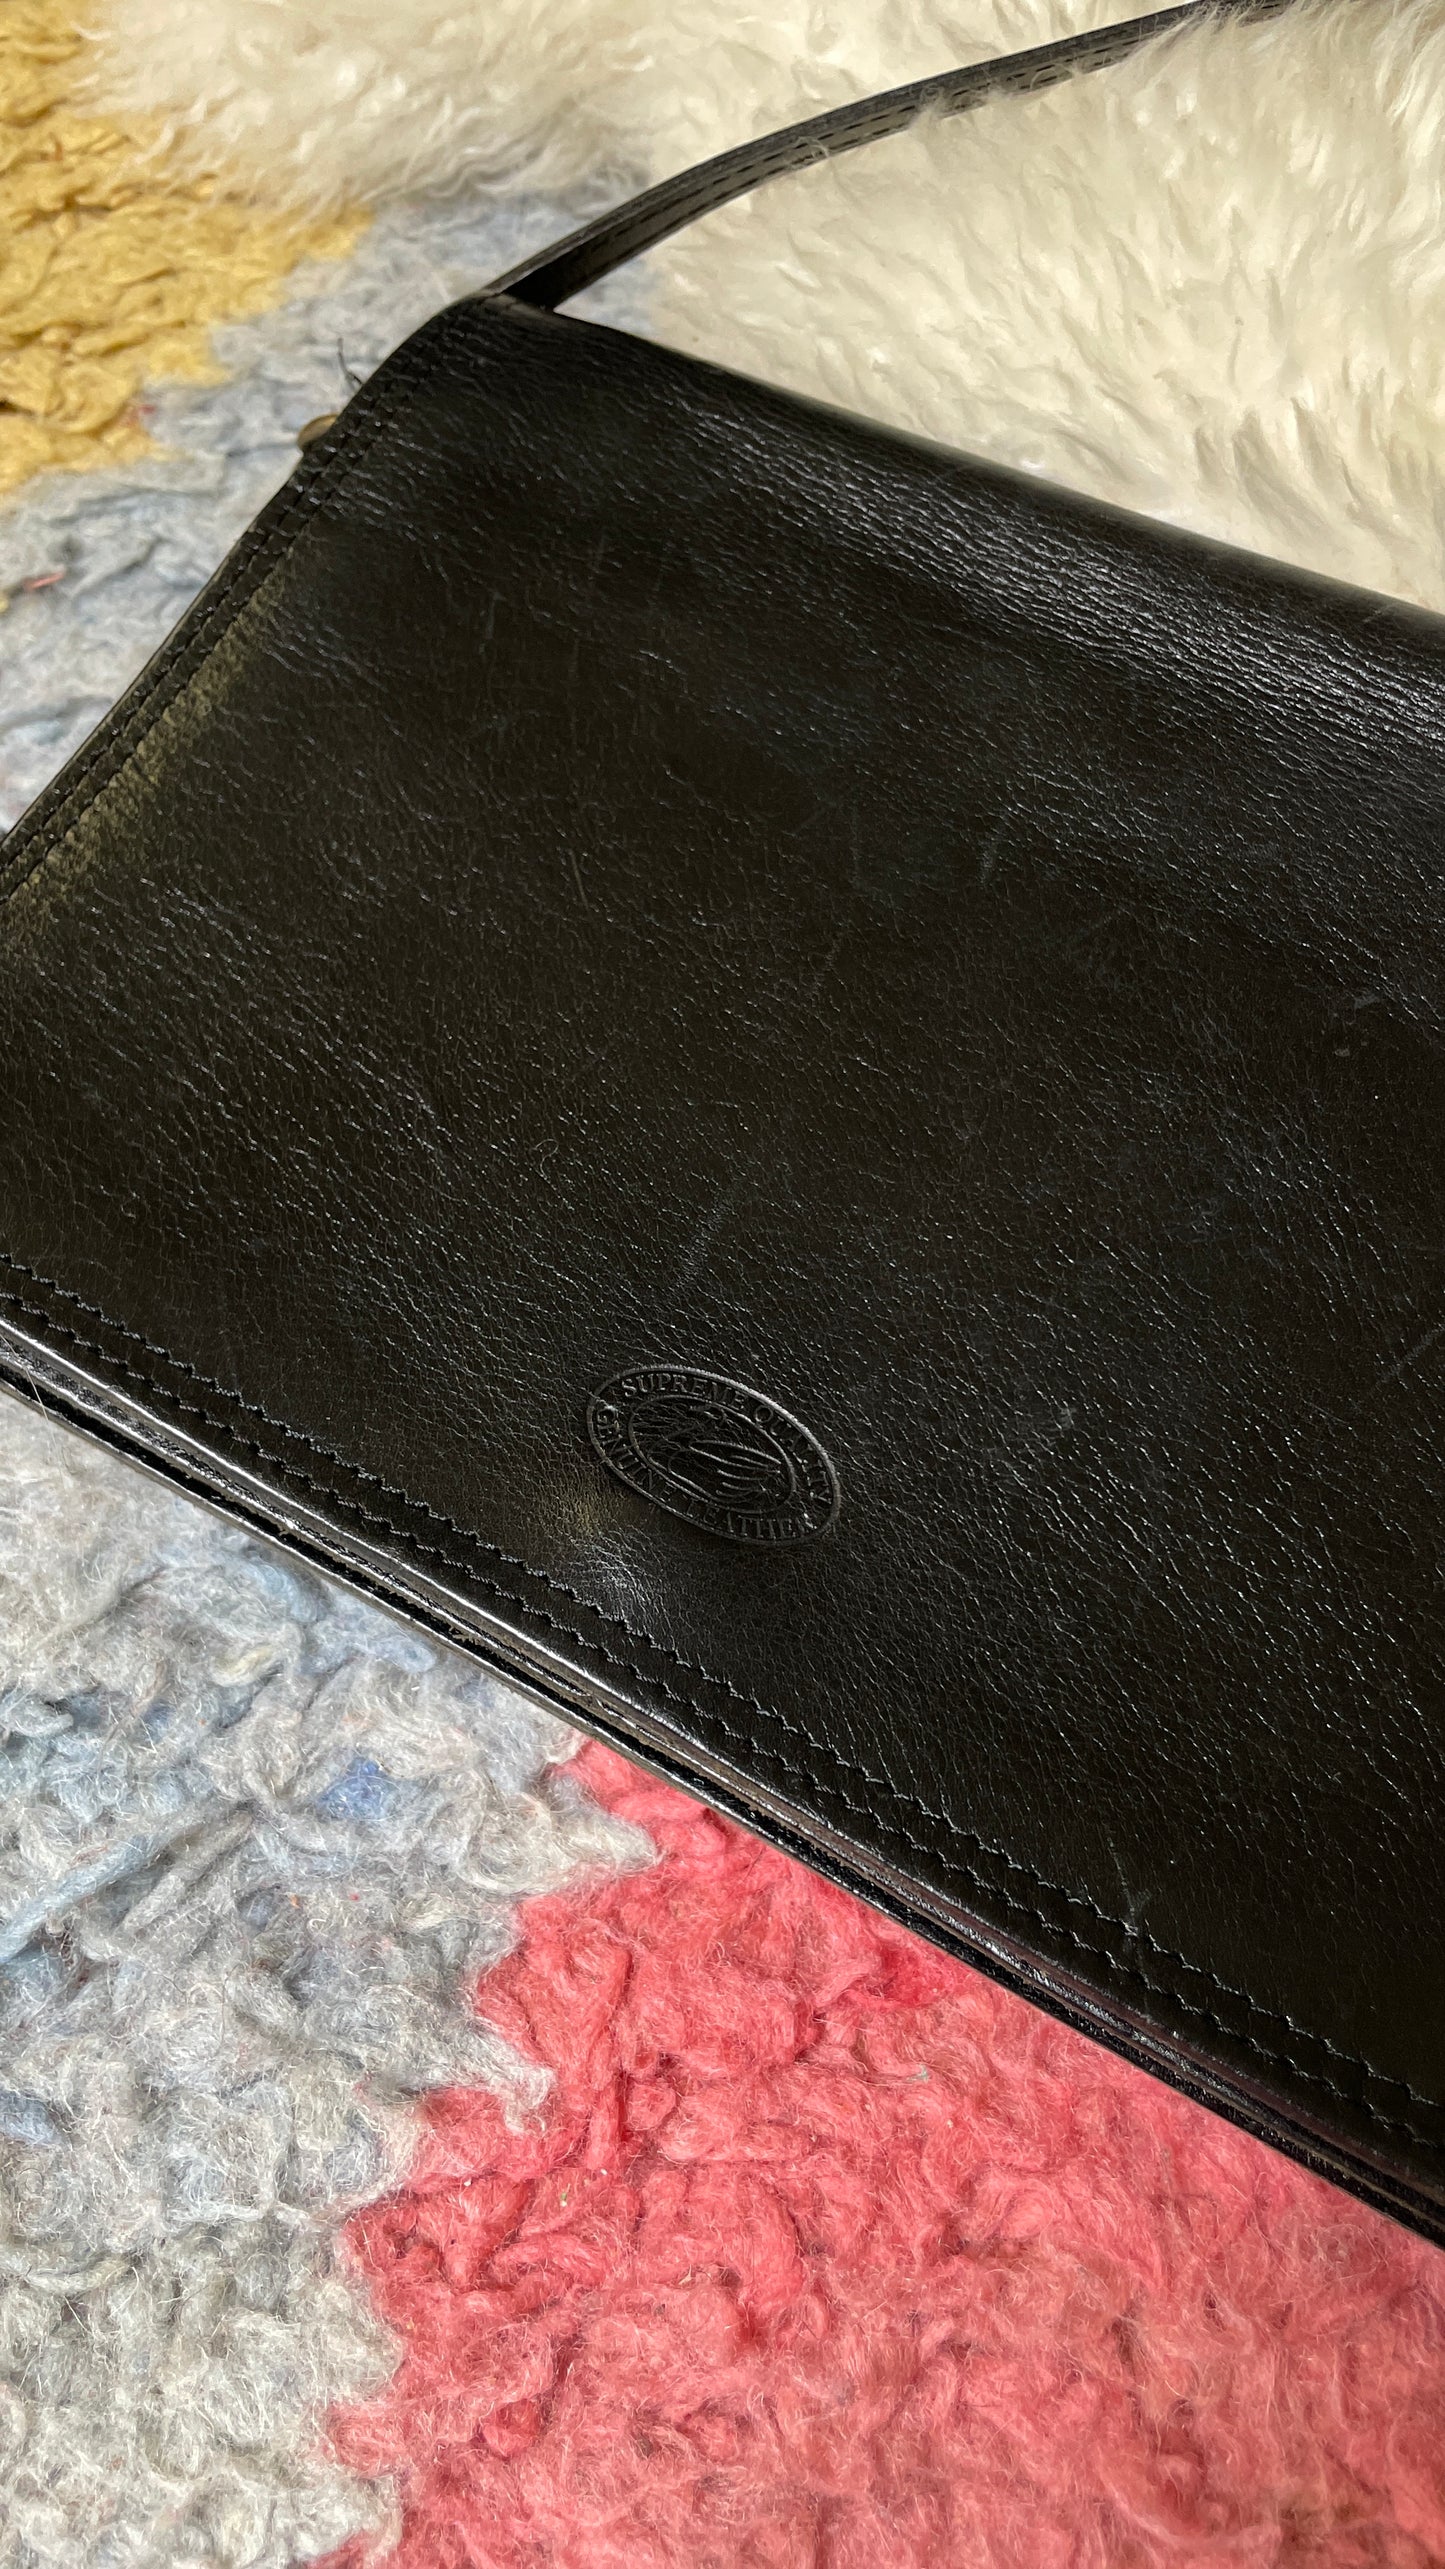 Basic leather purse